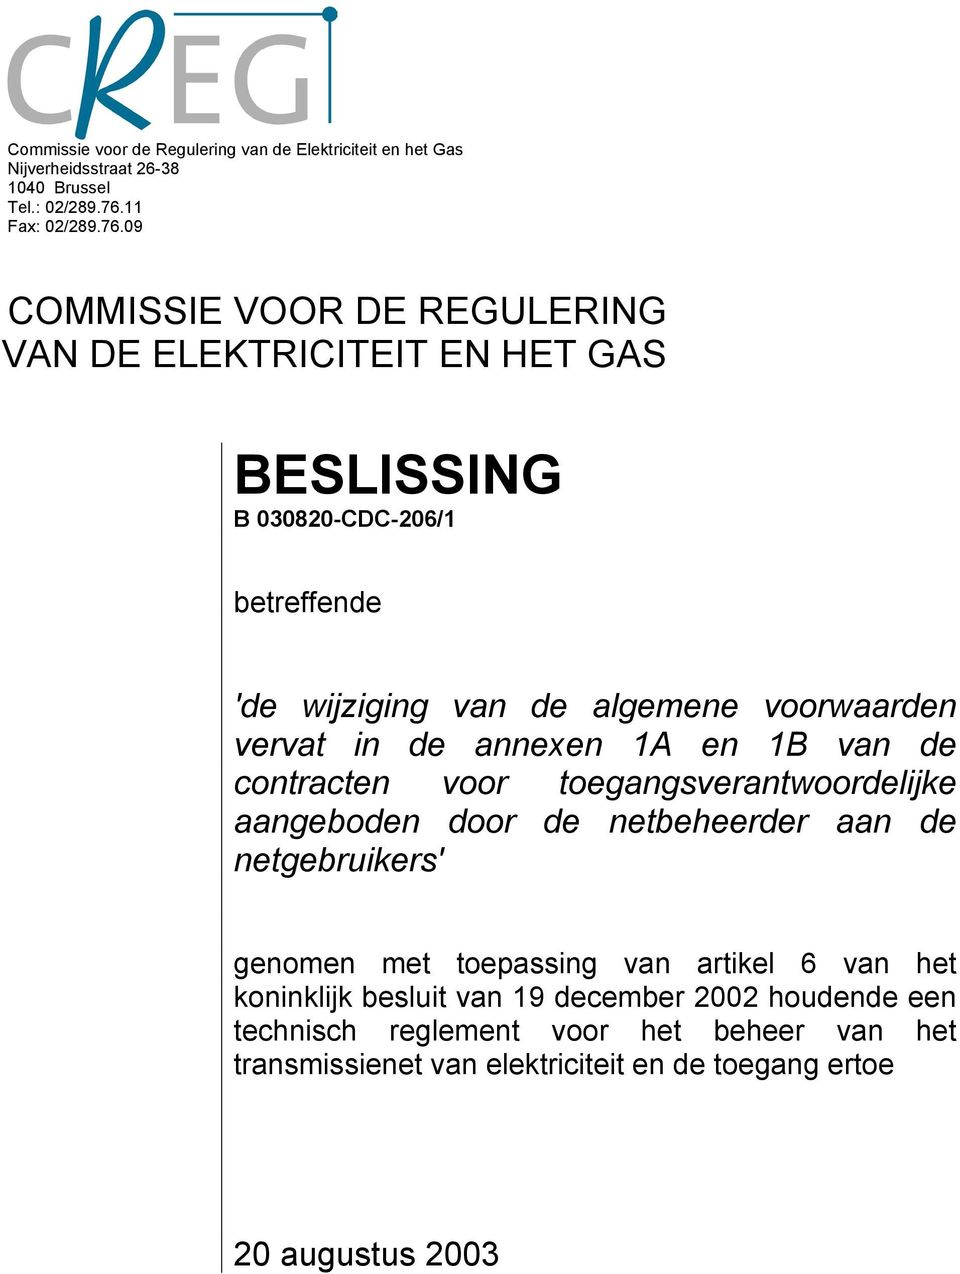 09 COMMISSIE VOOR DE REGULERING VAN DE ELEKTRICITEIT EN HET GAS BESLISSING B 030820-CDC-206/1 betreffende 'de wijziging van de algemene voorwaarden vervat